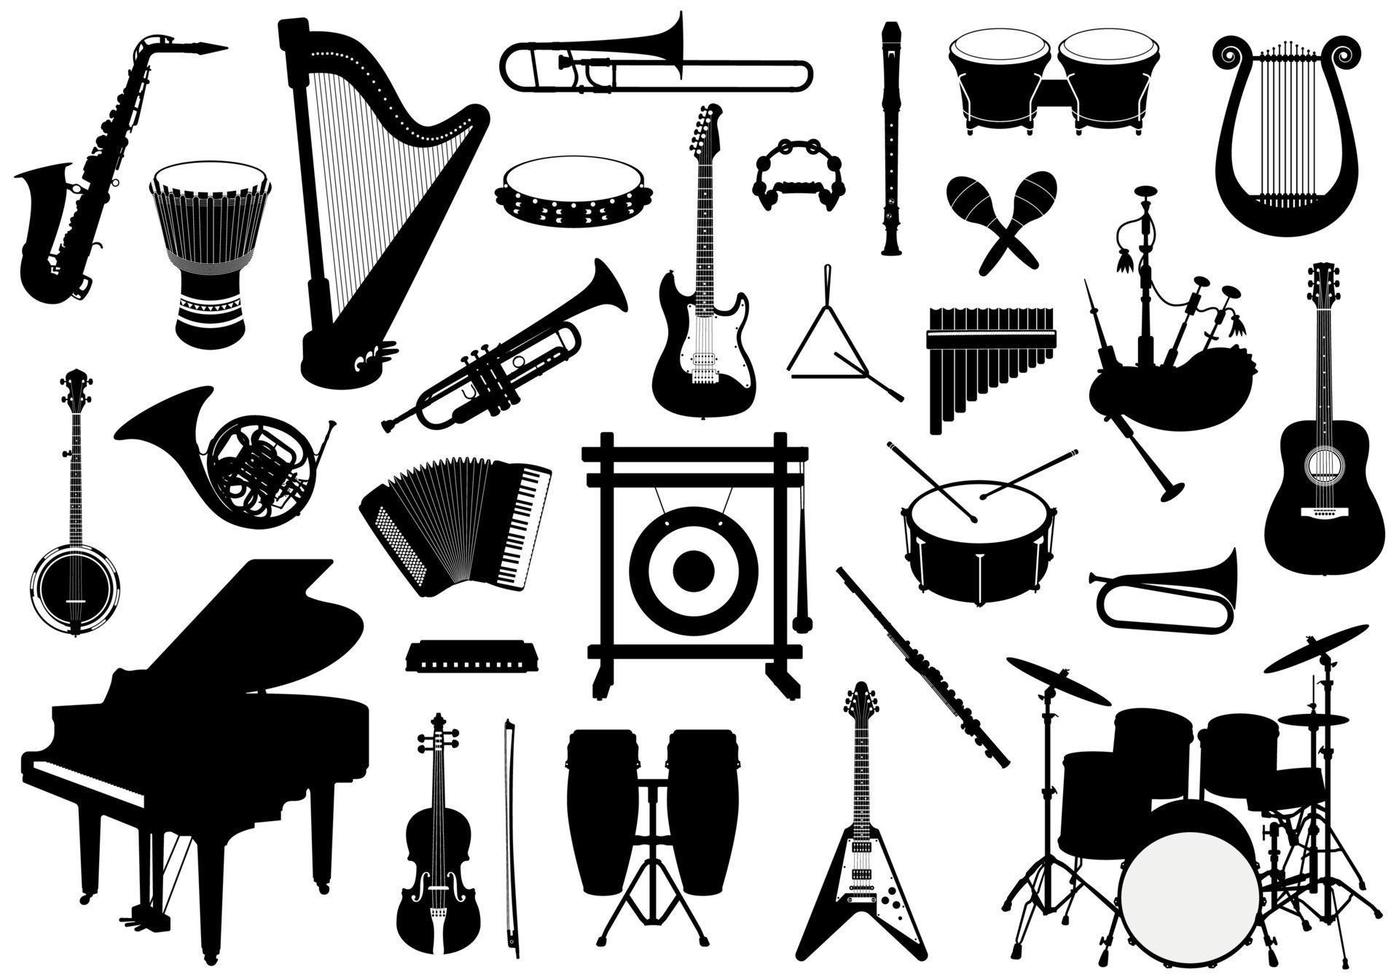 impostato di musicale strumenti sagome, batteria, percussione, tastiera e corda strumenti illustrazioni vettore